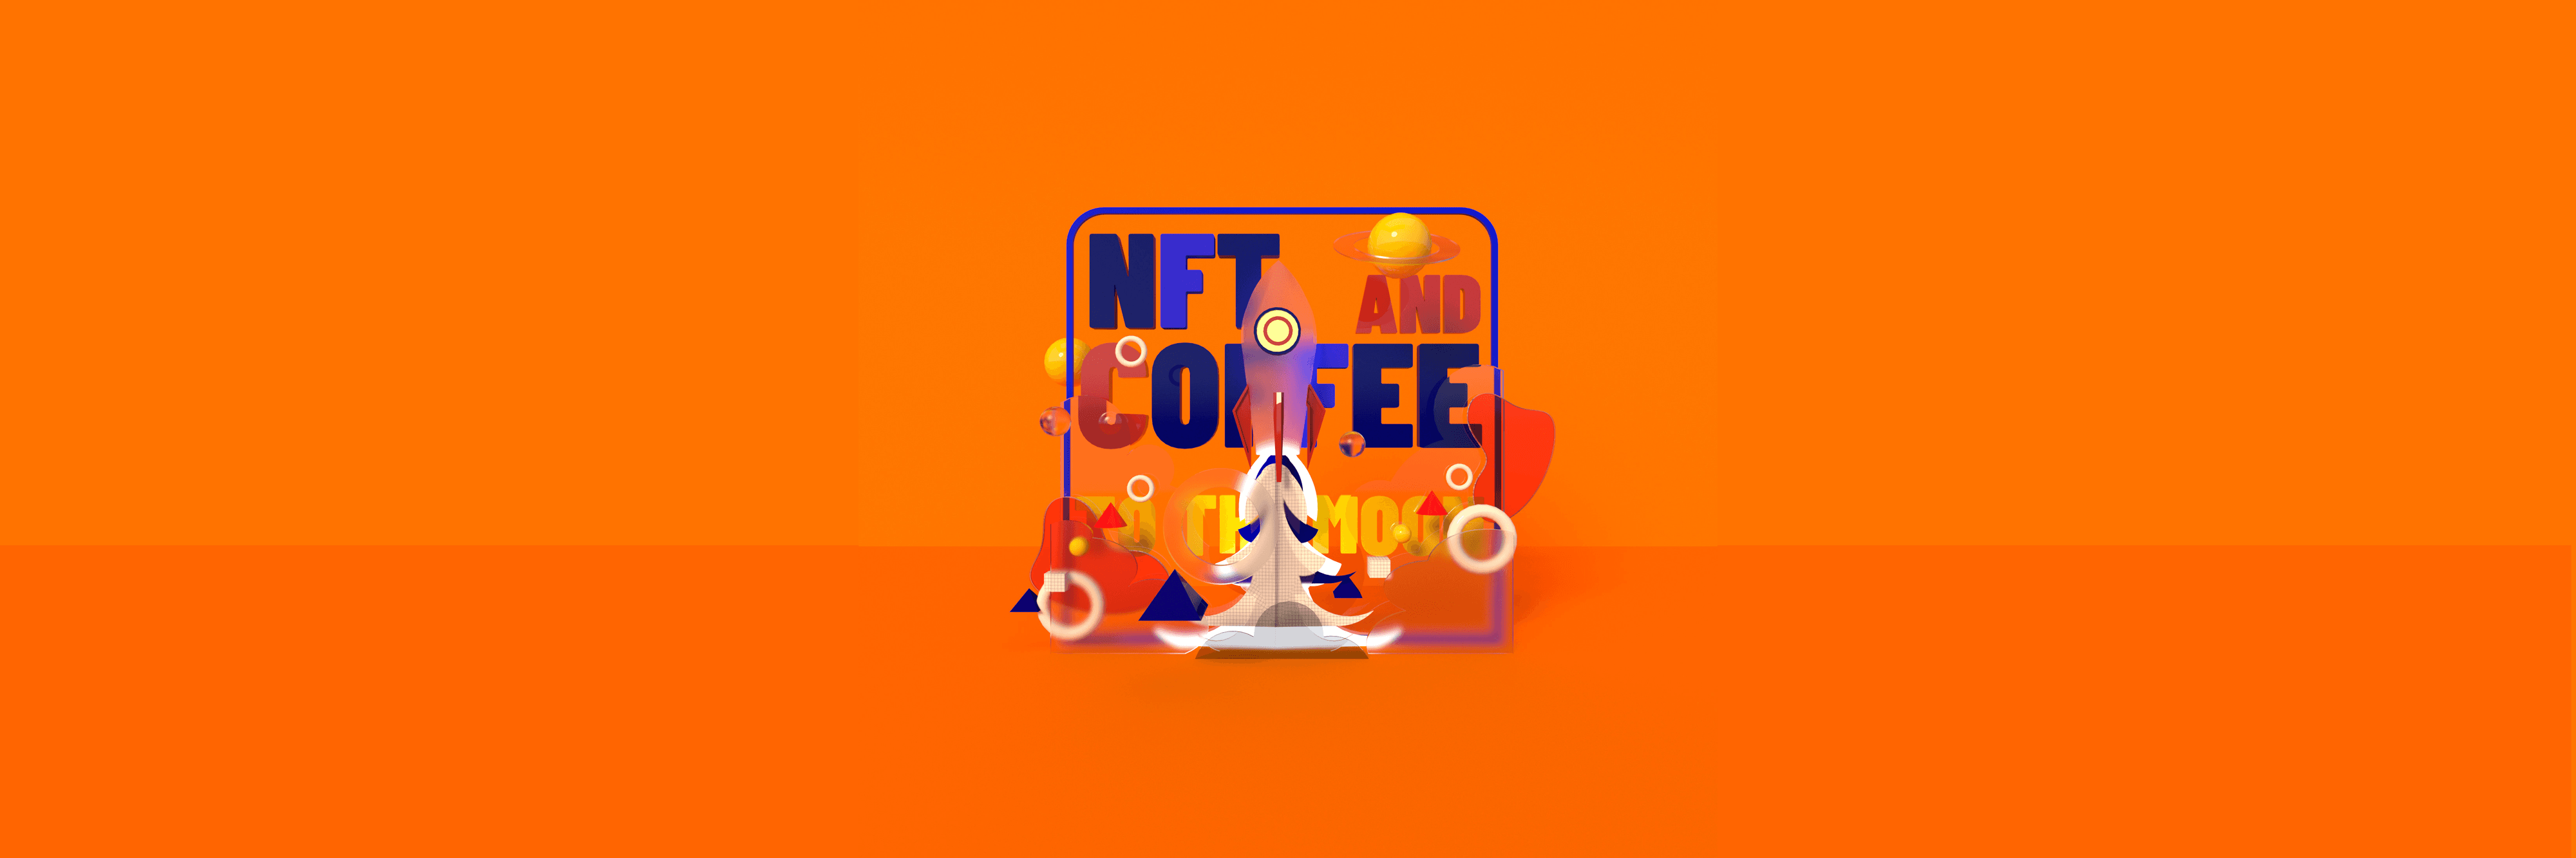 nft_and_coffee 横幅